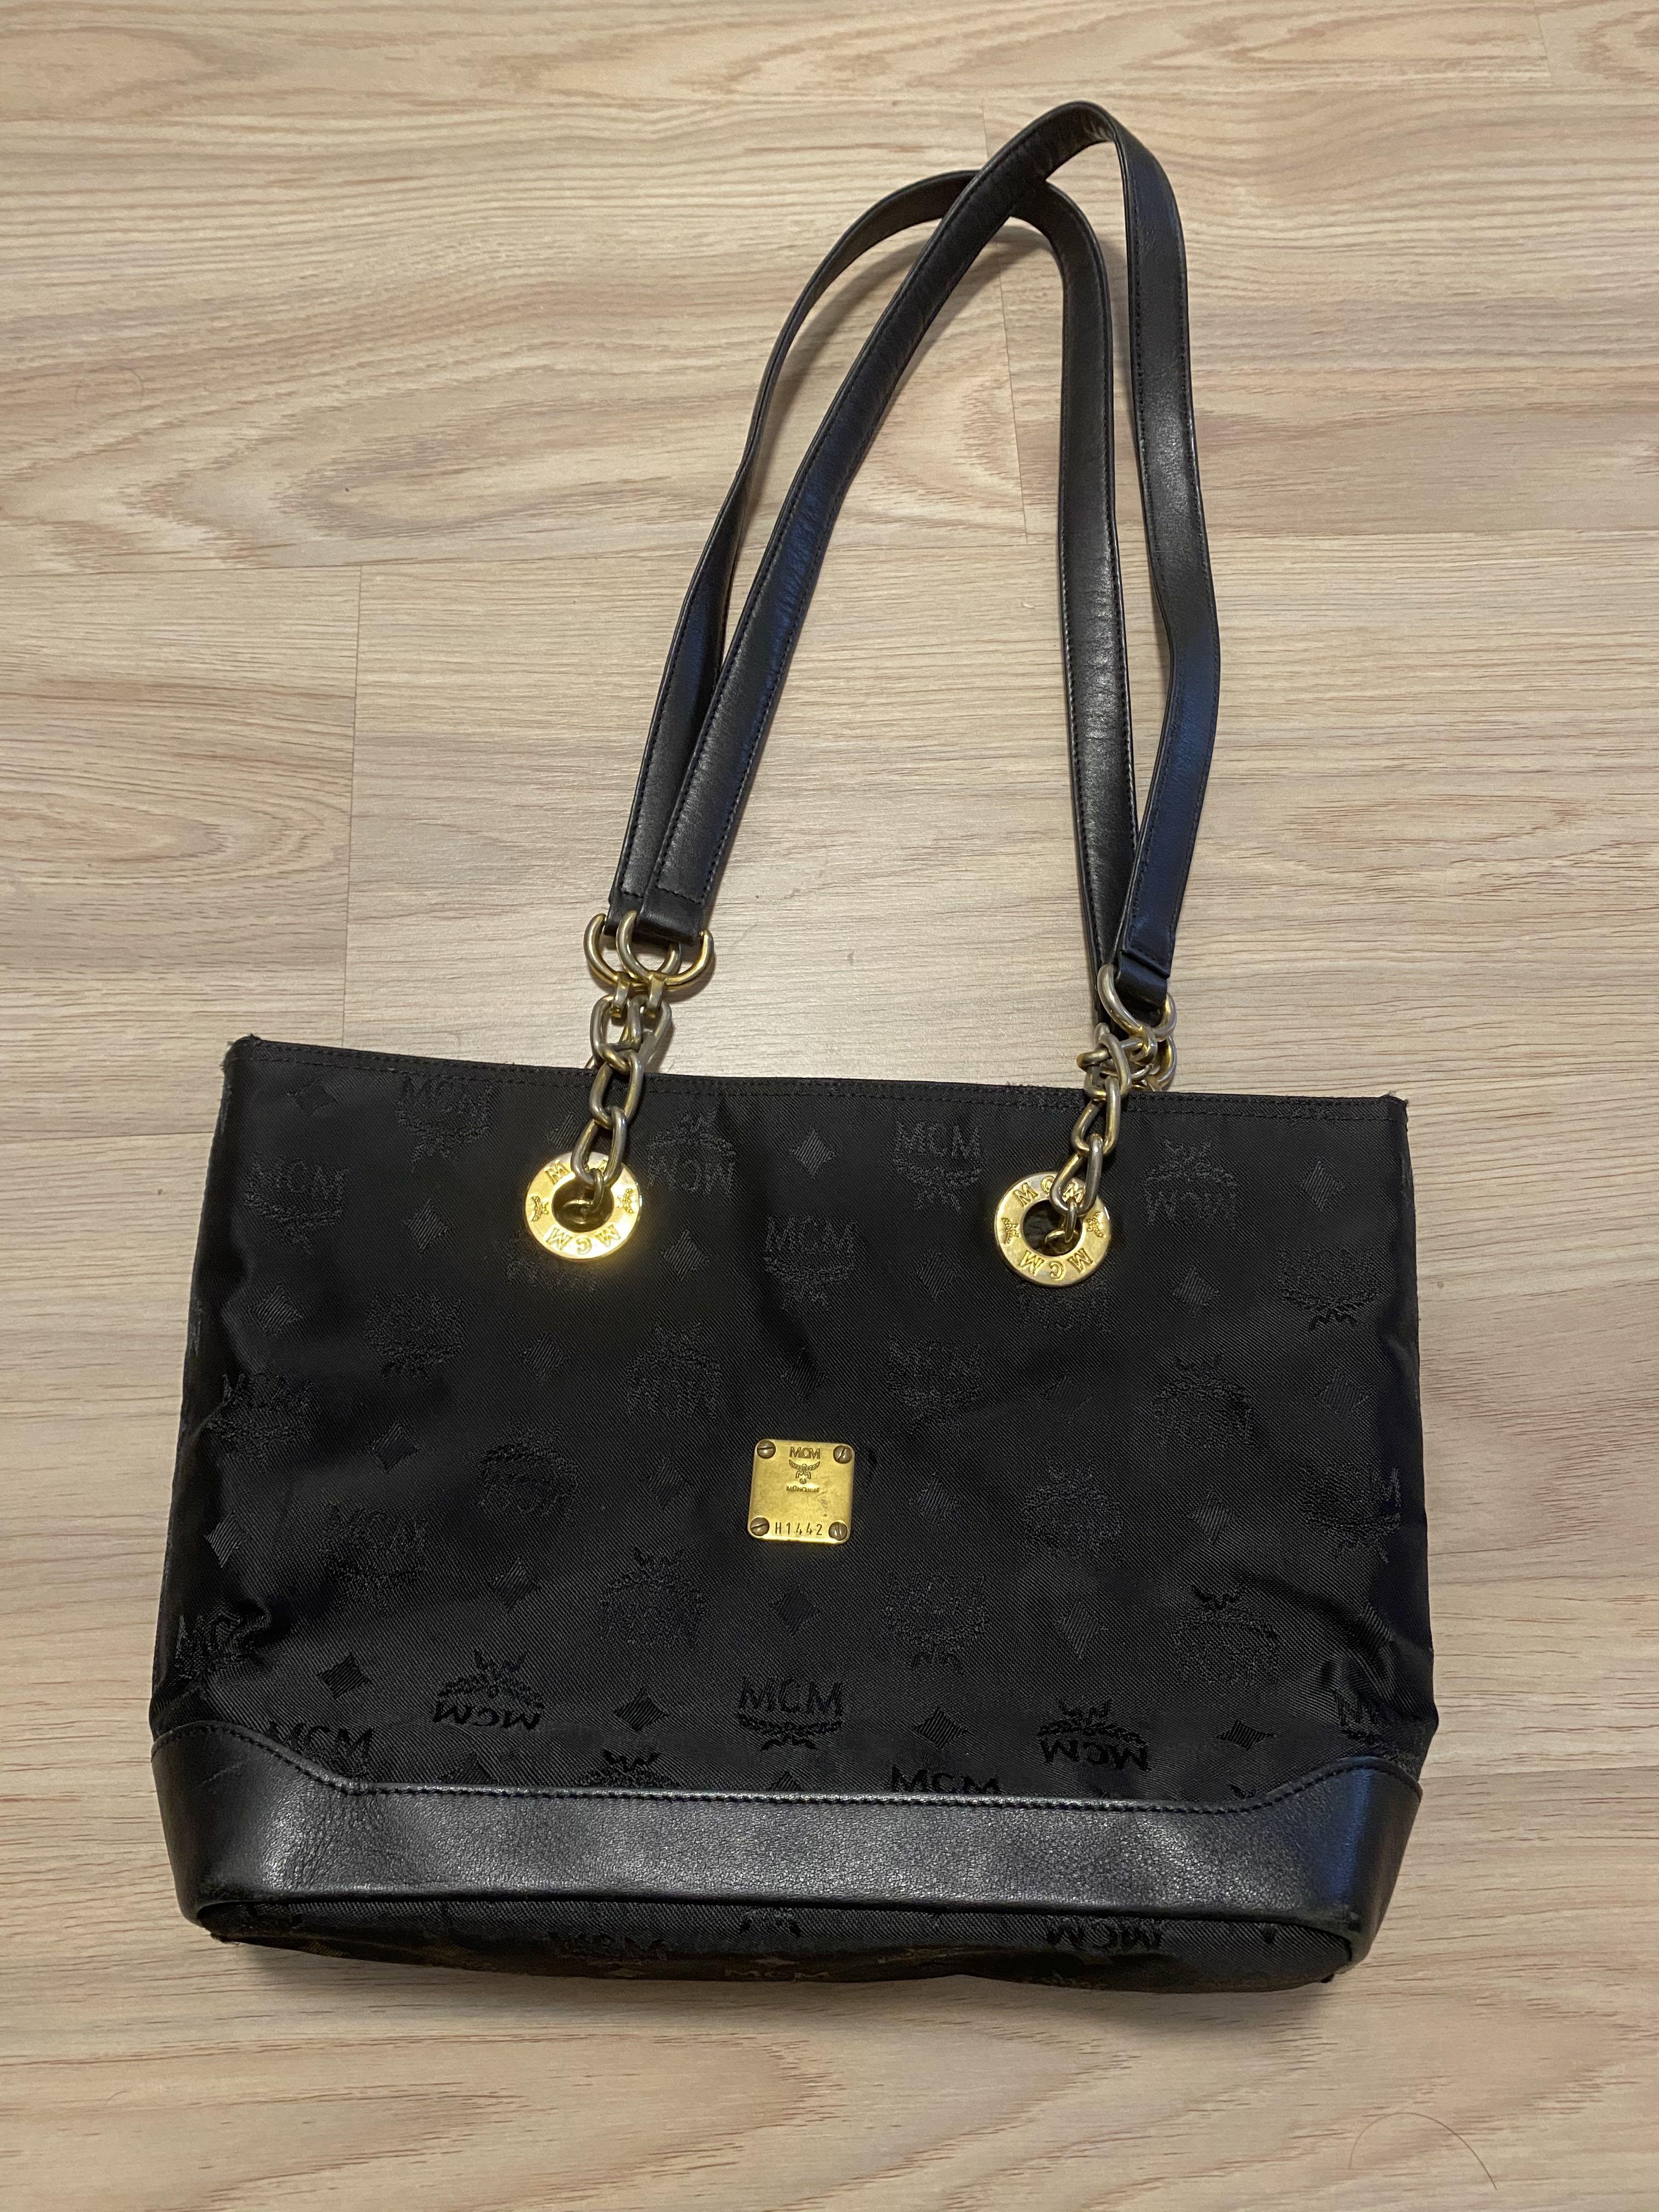 MCM handbag black, Women's Fashion, Bags & Wallets, Tote Bags on